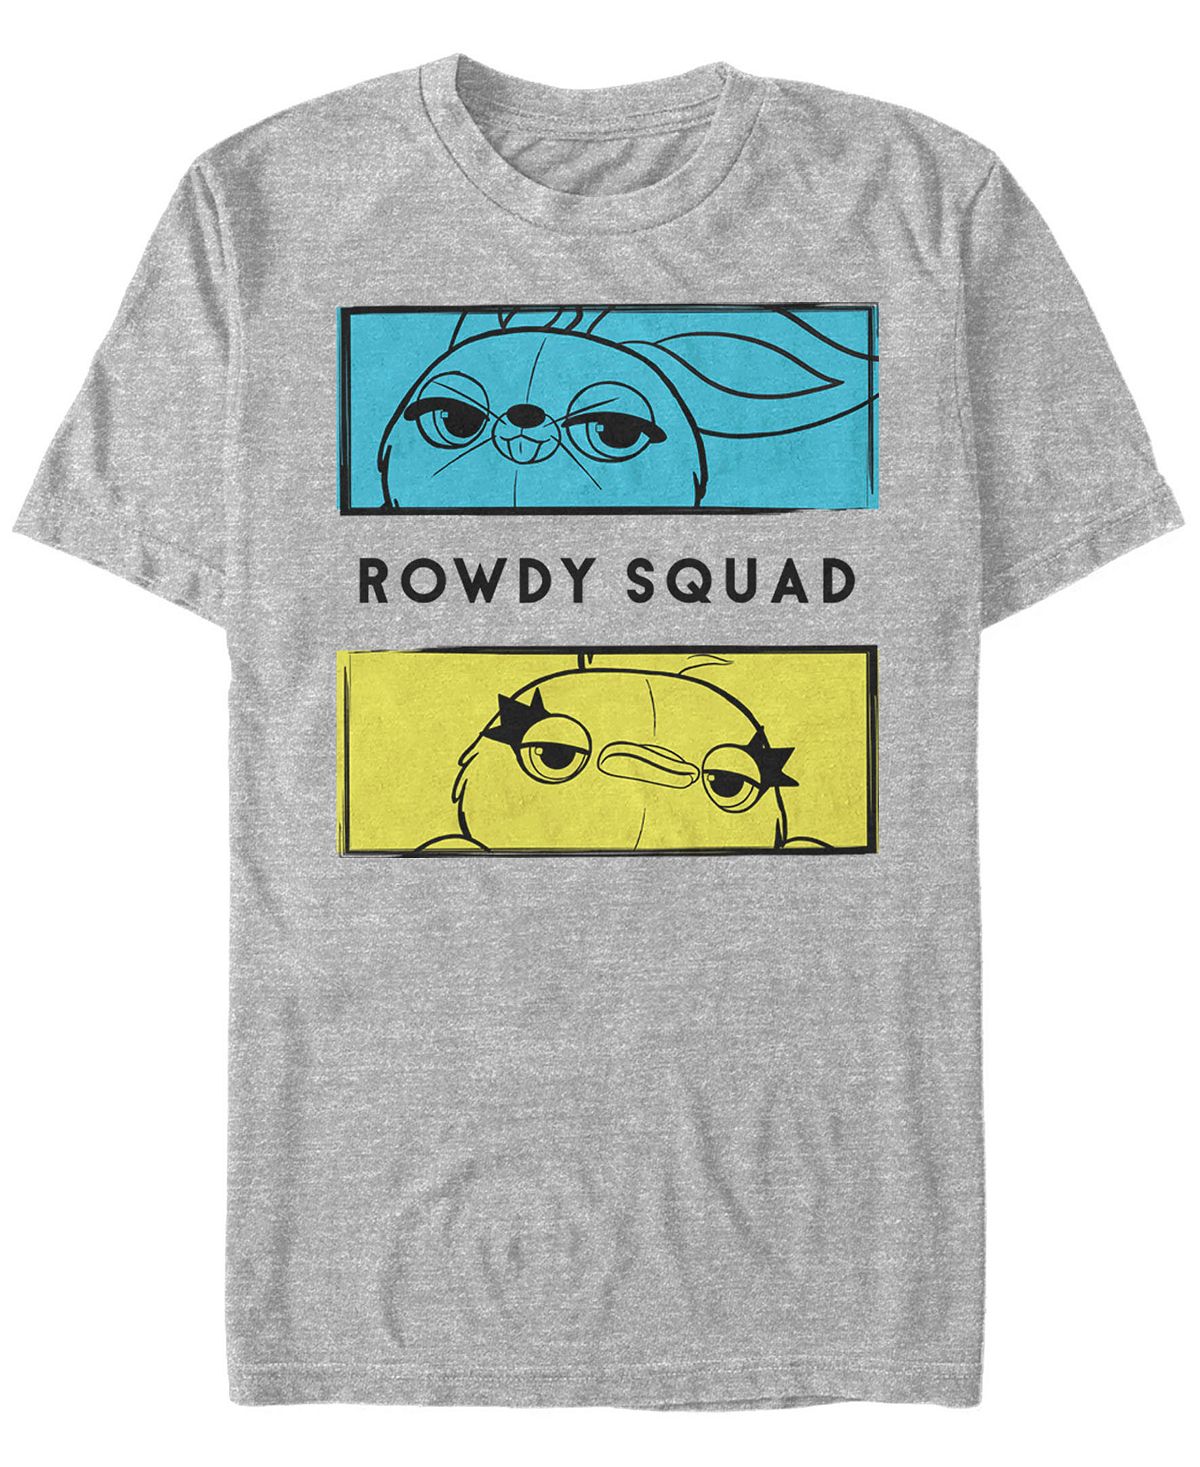 Мужская футболка с короткими рукавами disney pixar история игрушек 4 уточки и банни rowdy squad Fifth Sun, мульти